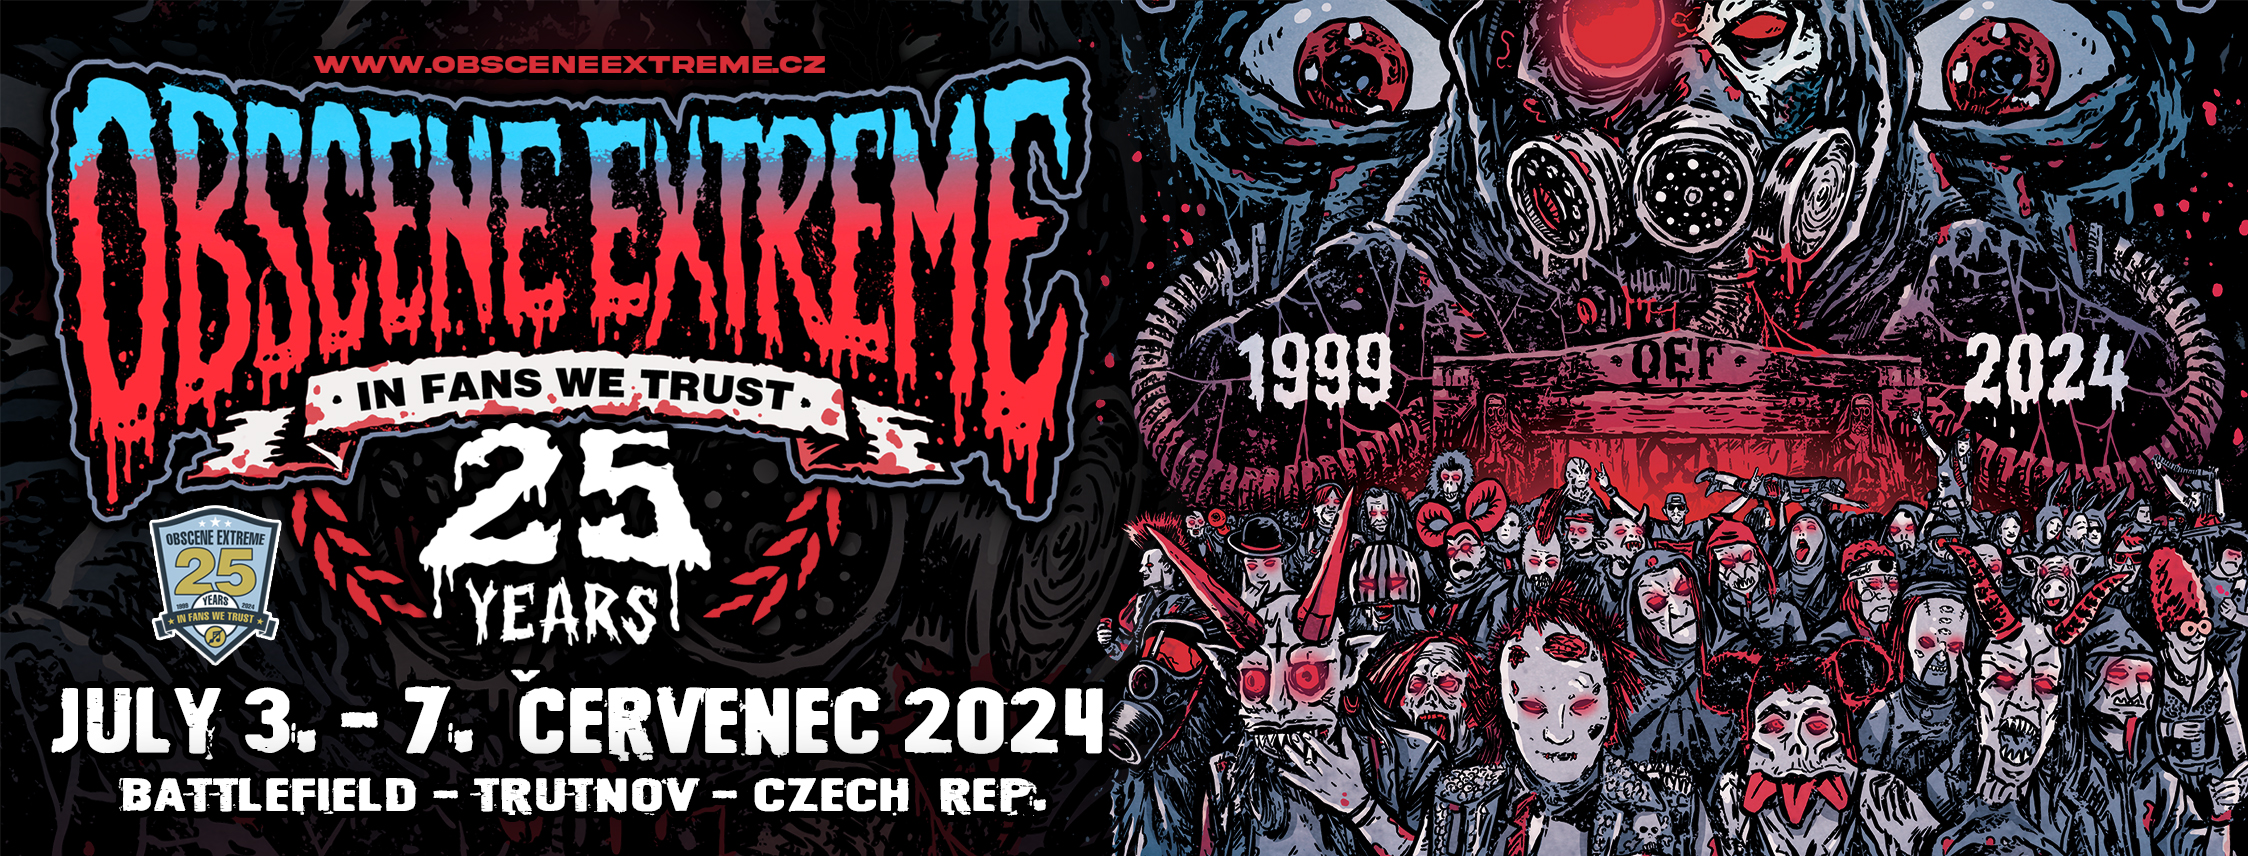 Obscene Extreme Festival Prague